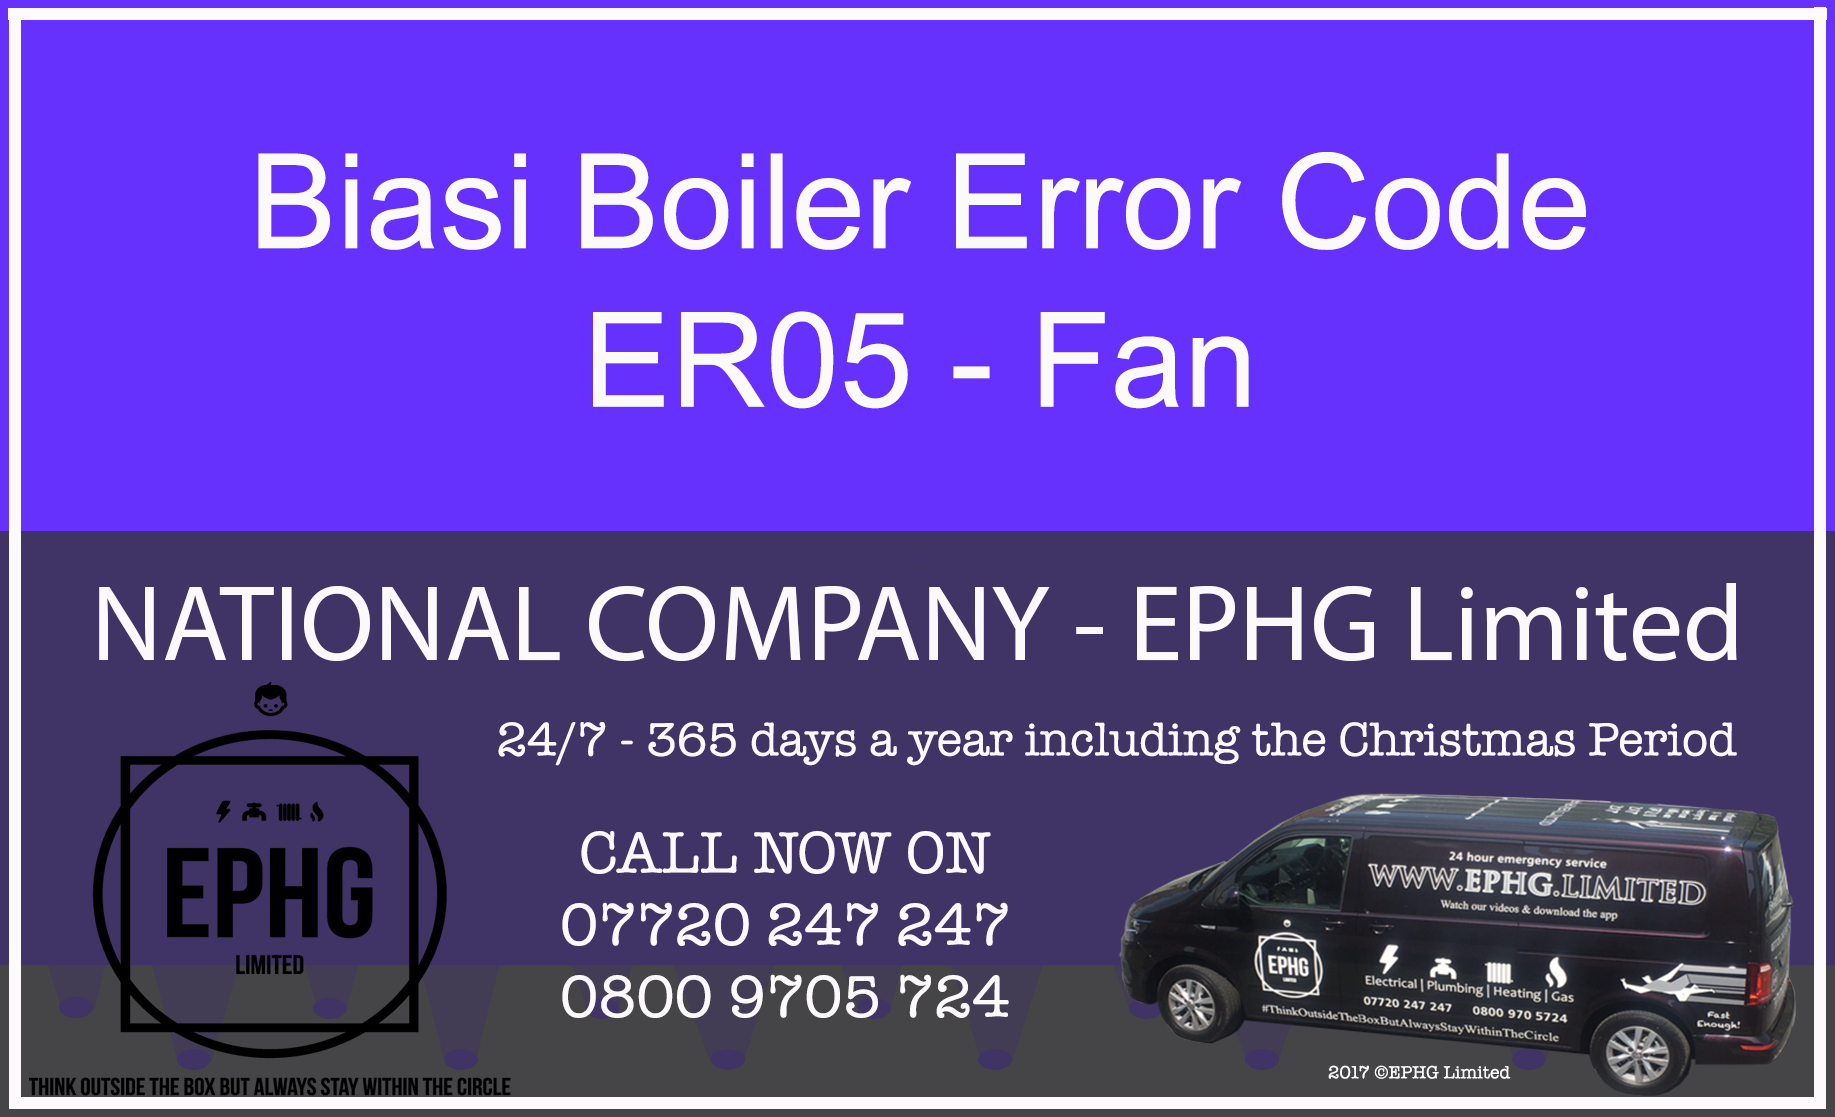 Biasi Boiler ER05 Fault Code Error